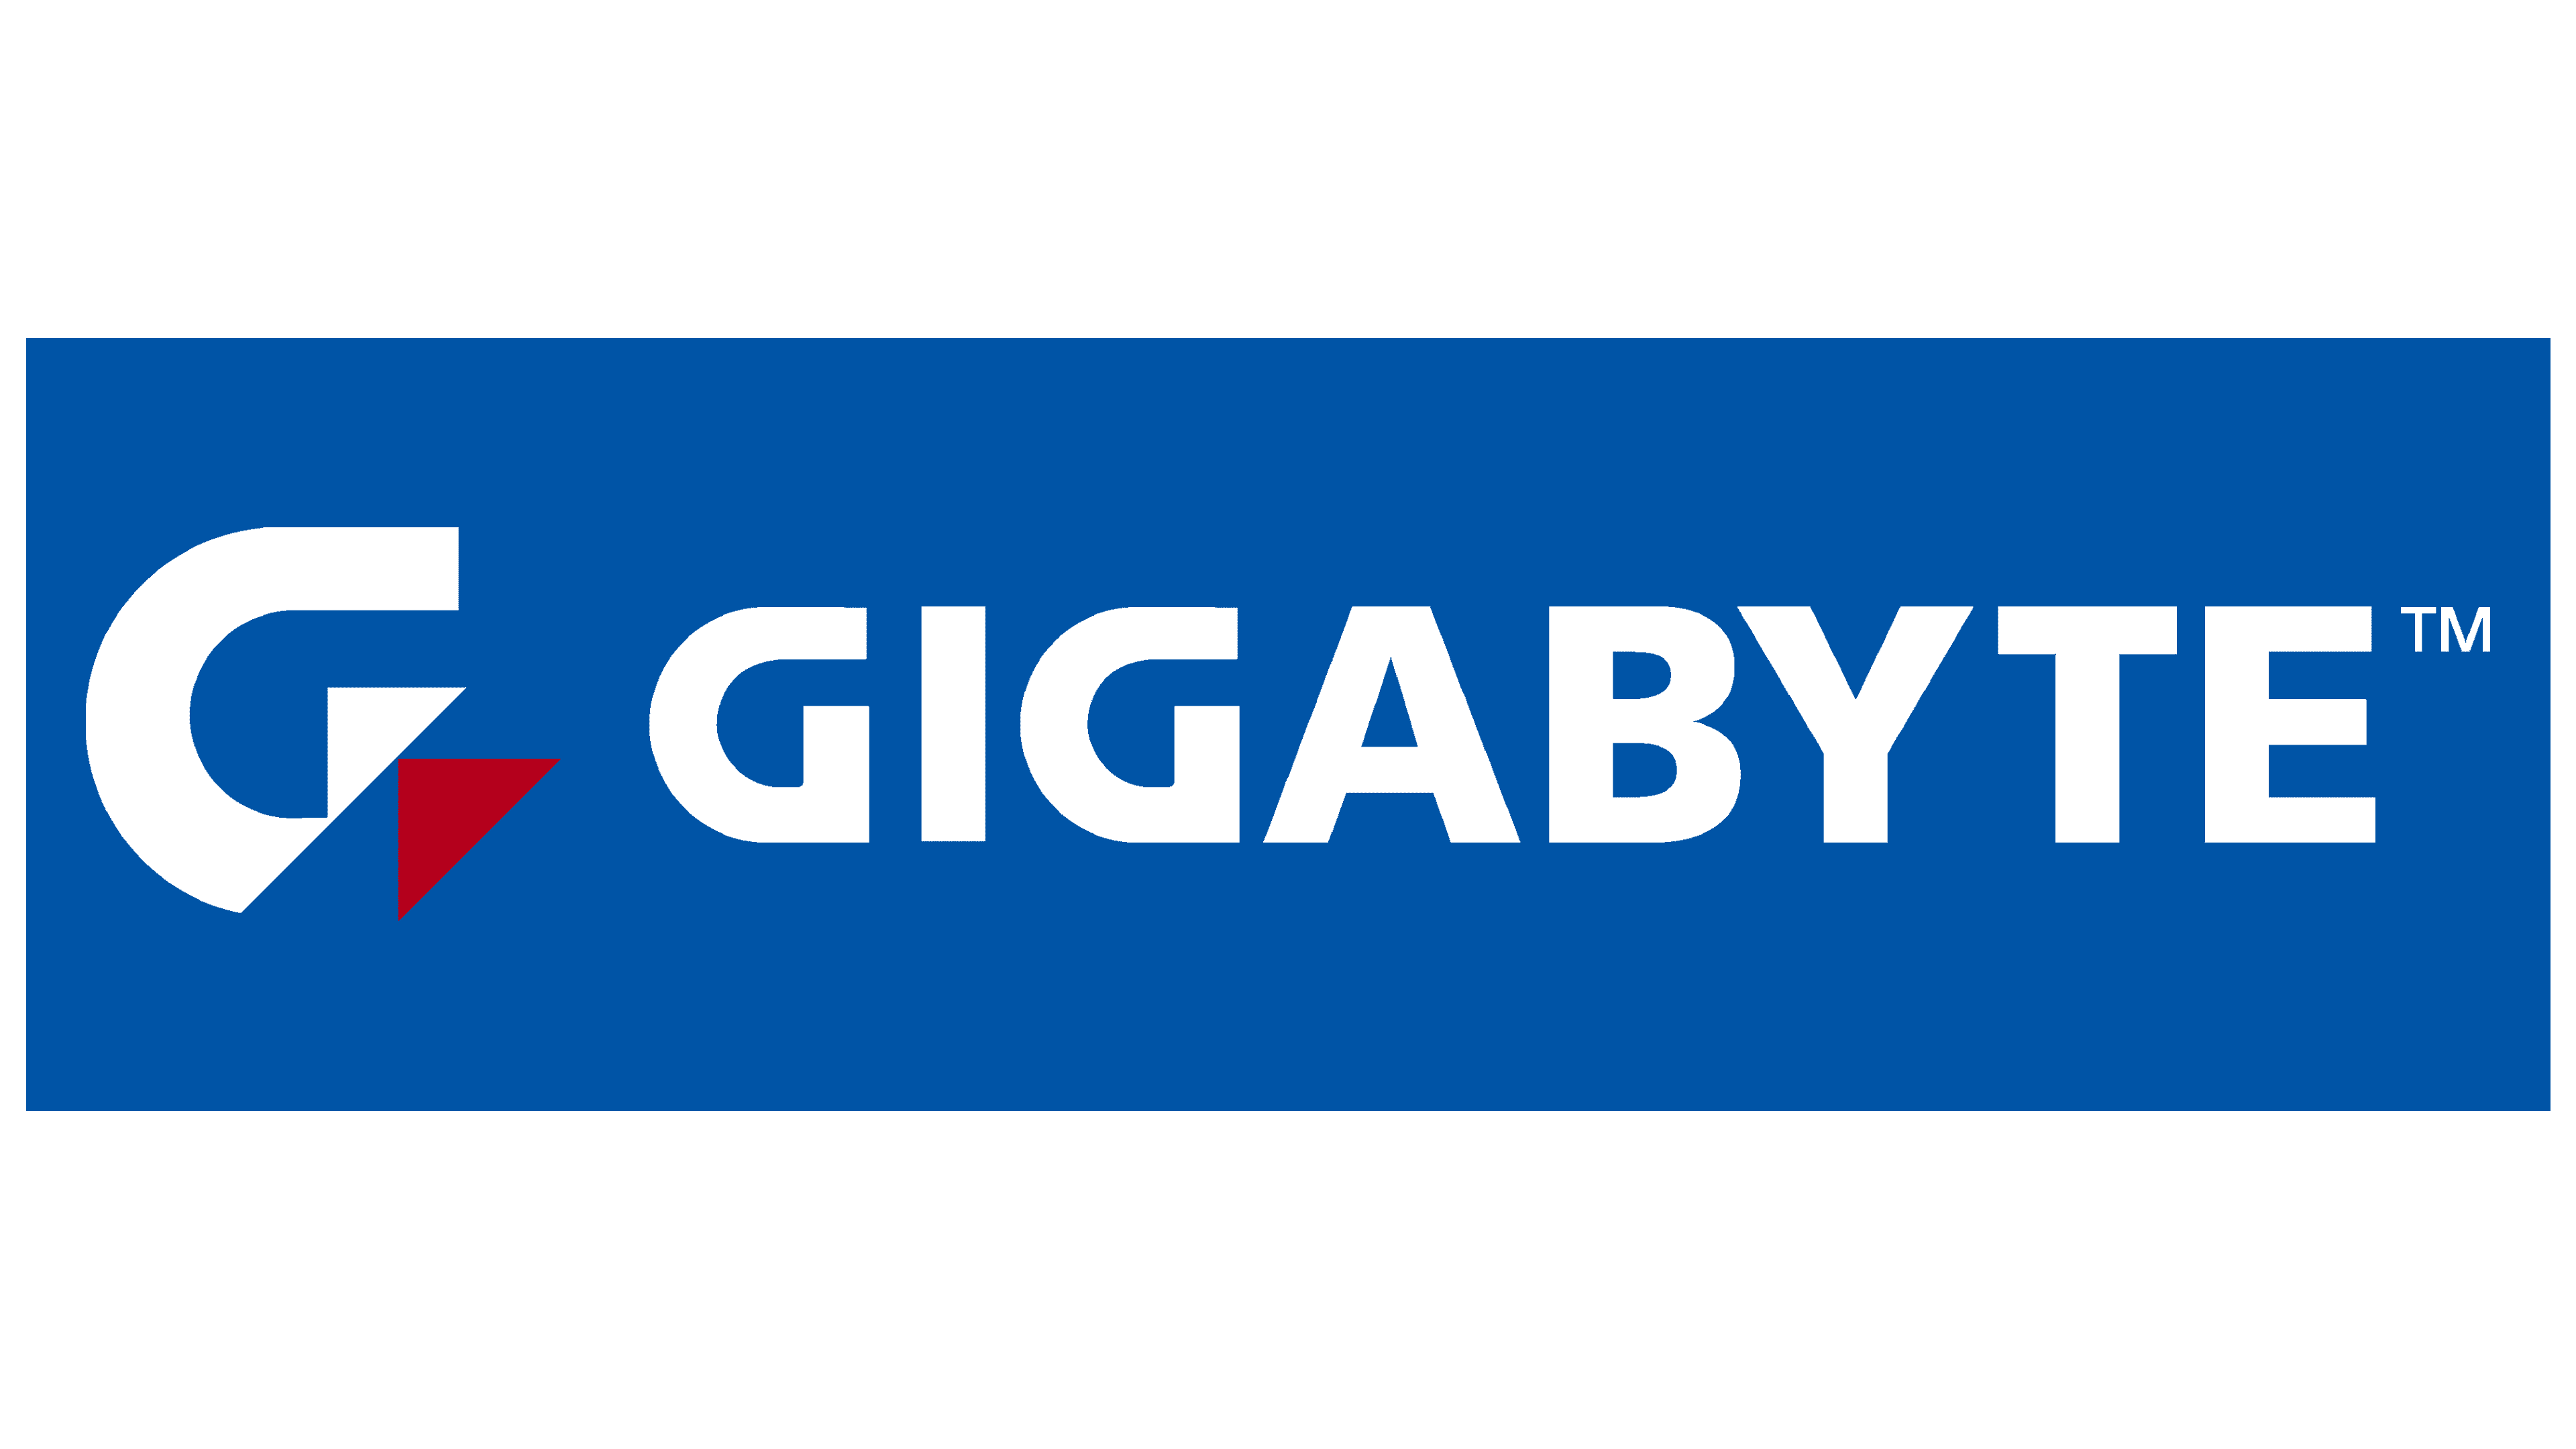 Gigabyte Logo y símbolo, significado, historia, PNG, marca